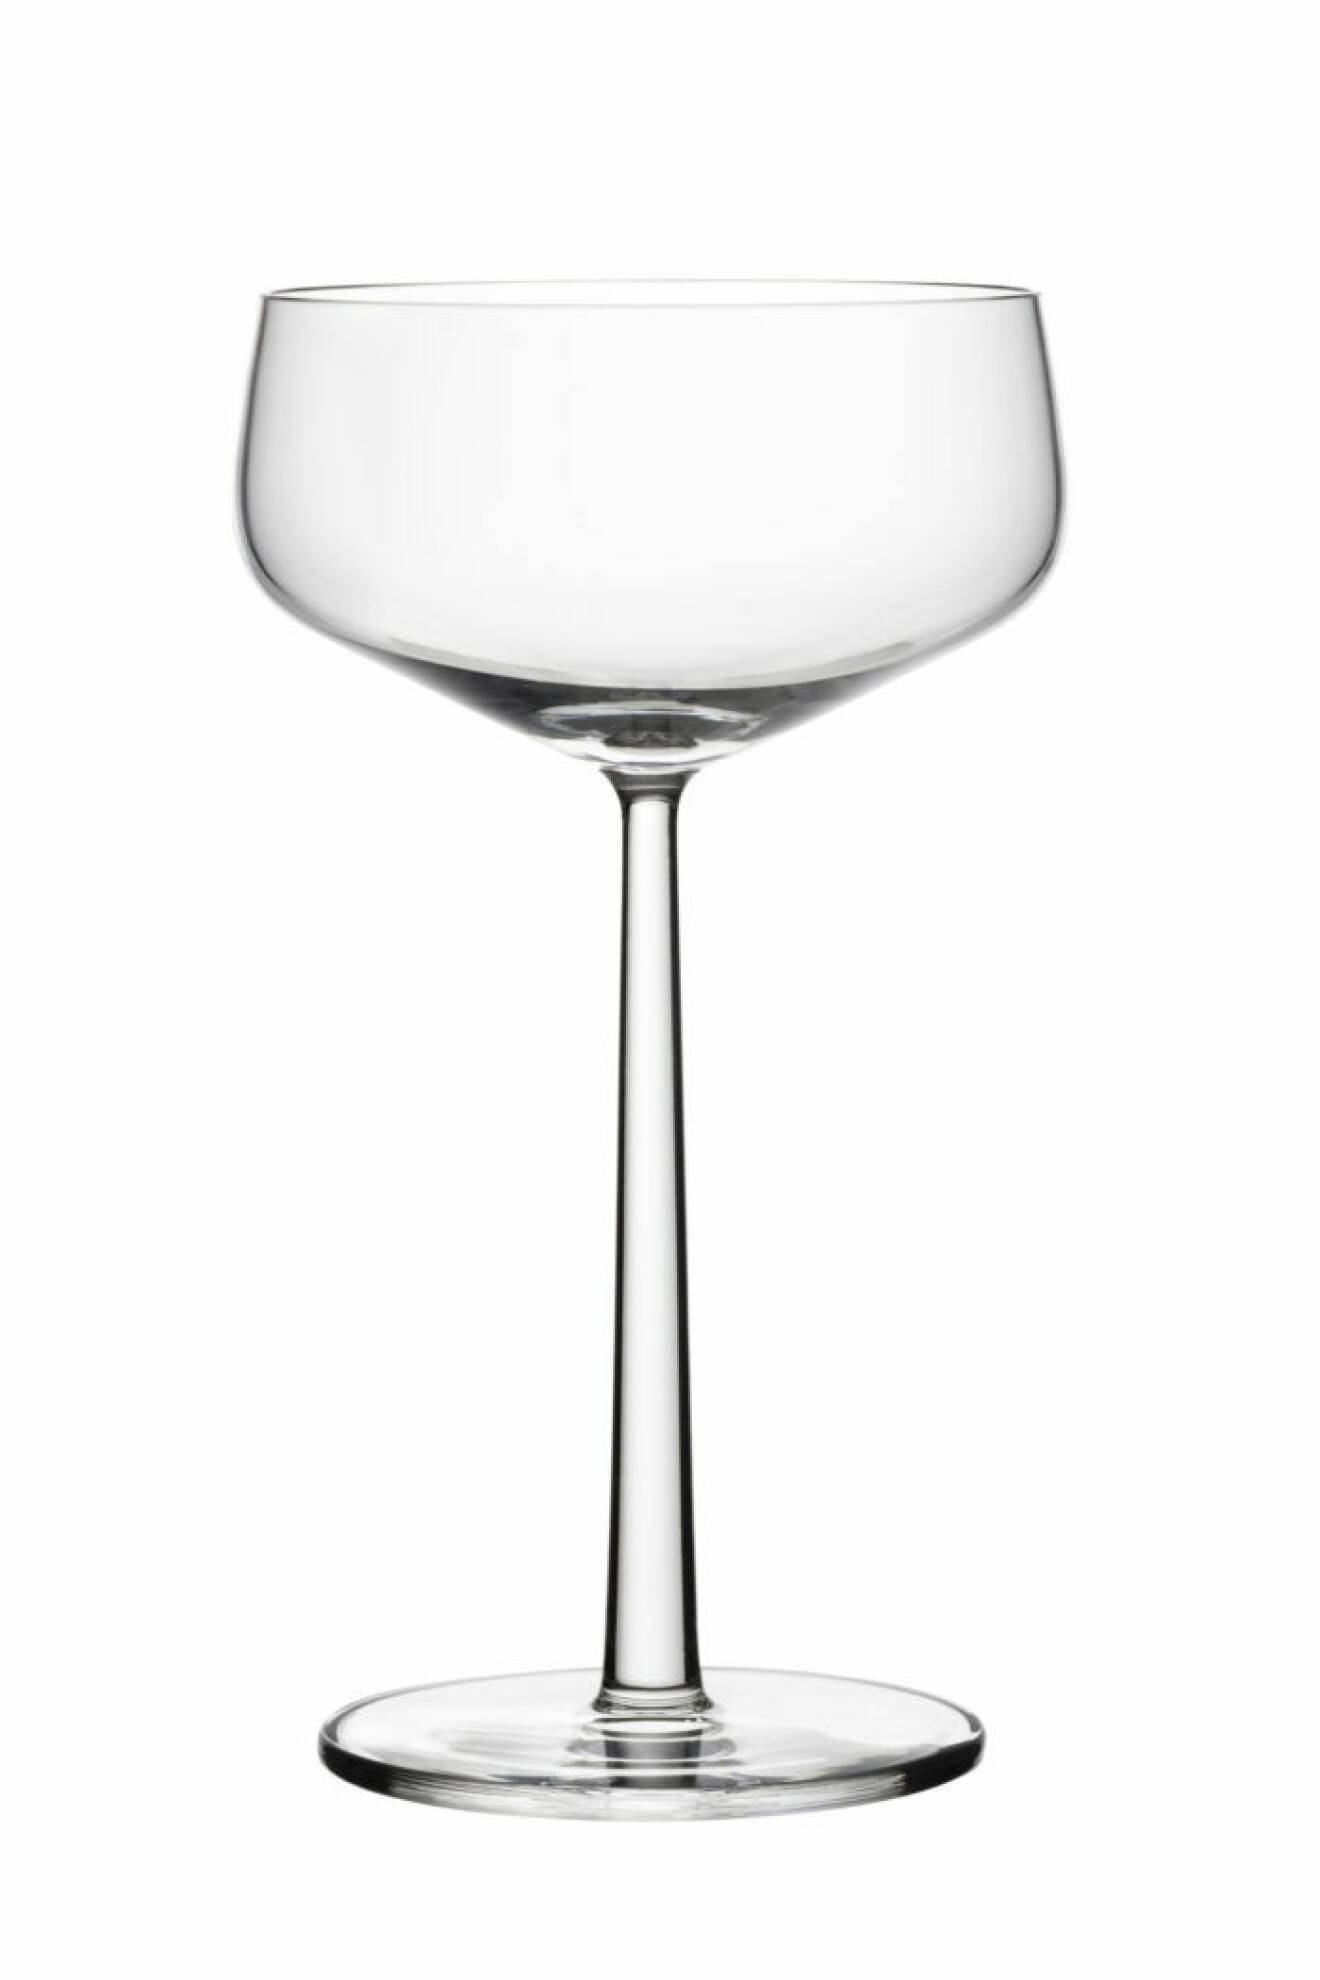 Cocktailglasen dessert/champagneskål 31 cl från Iittalas serie Essence passar fint både som drink-och efterrättsglas.